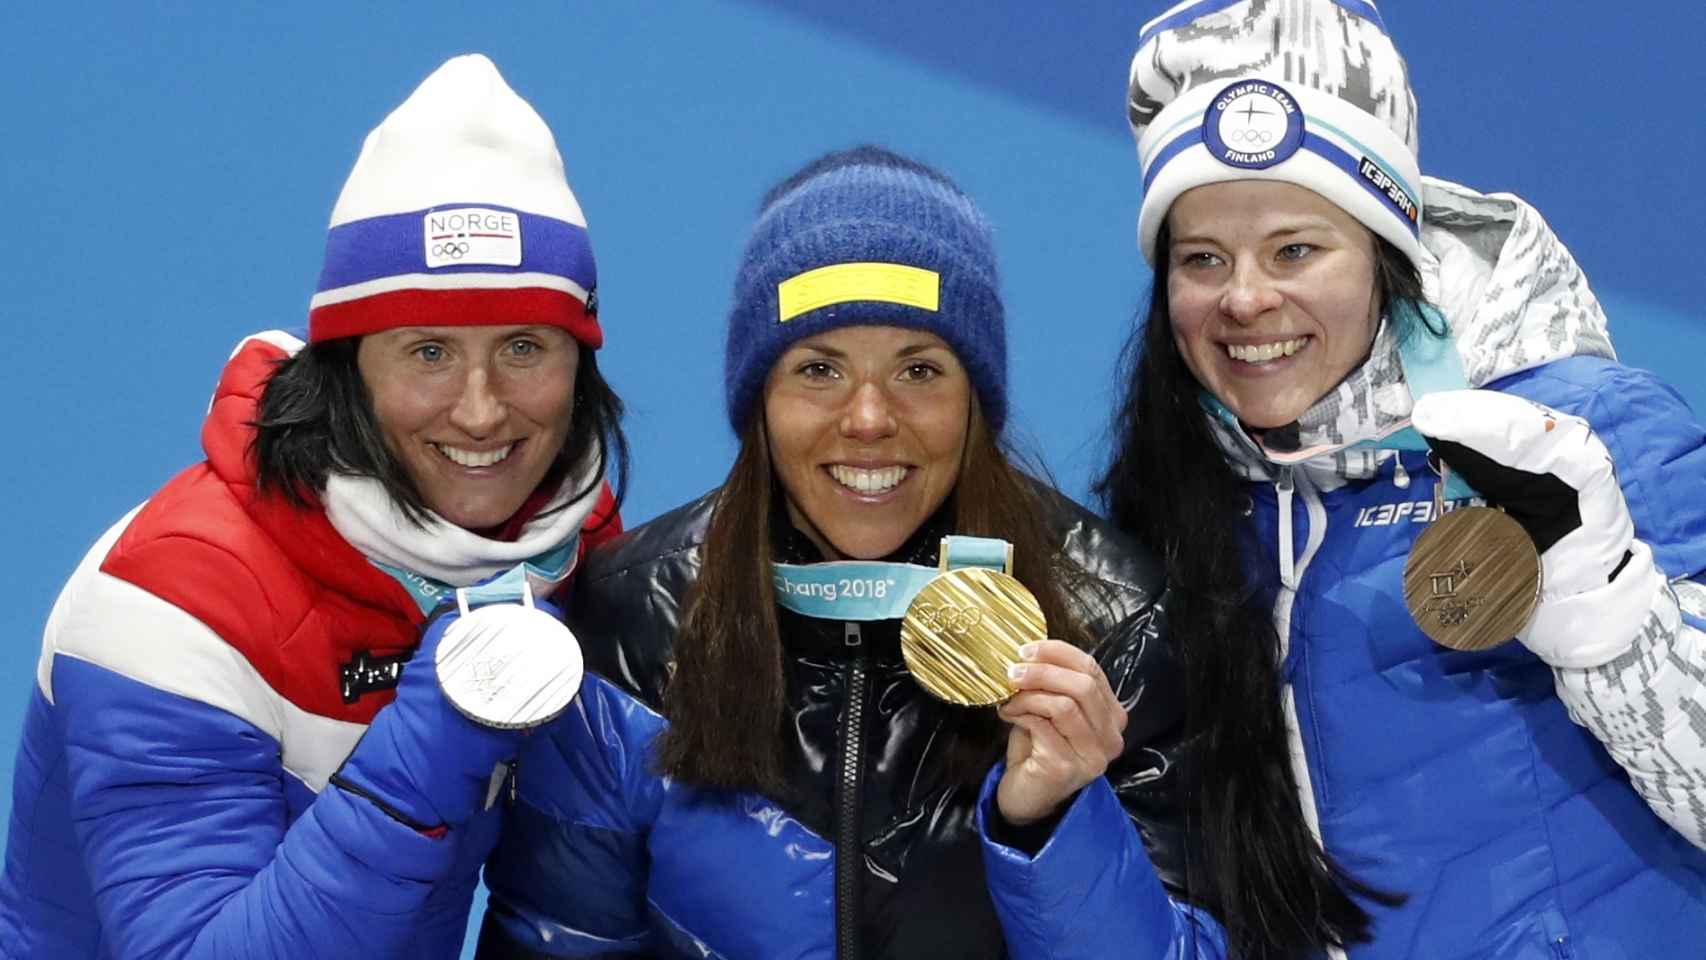 Primer podio de los Juegos de invierno: Kalla, Bjoergen y Parmakoski.